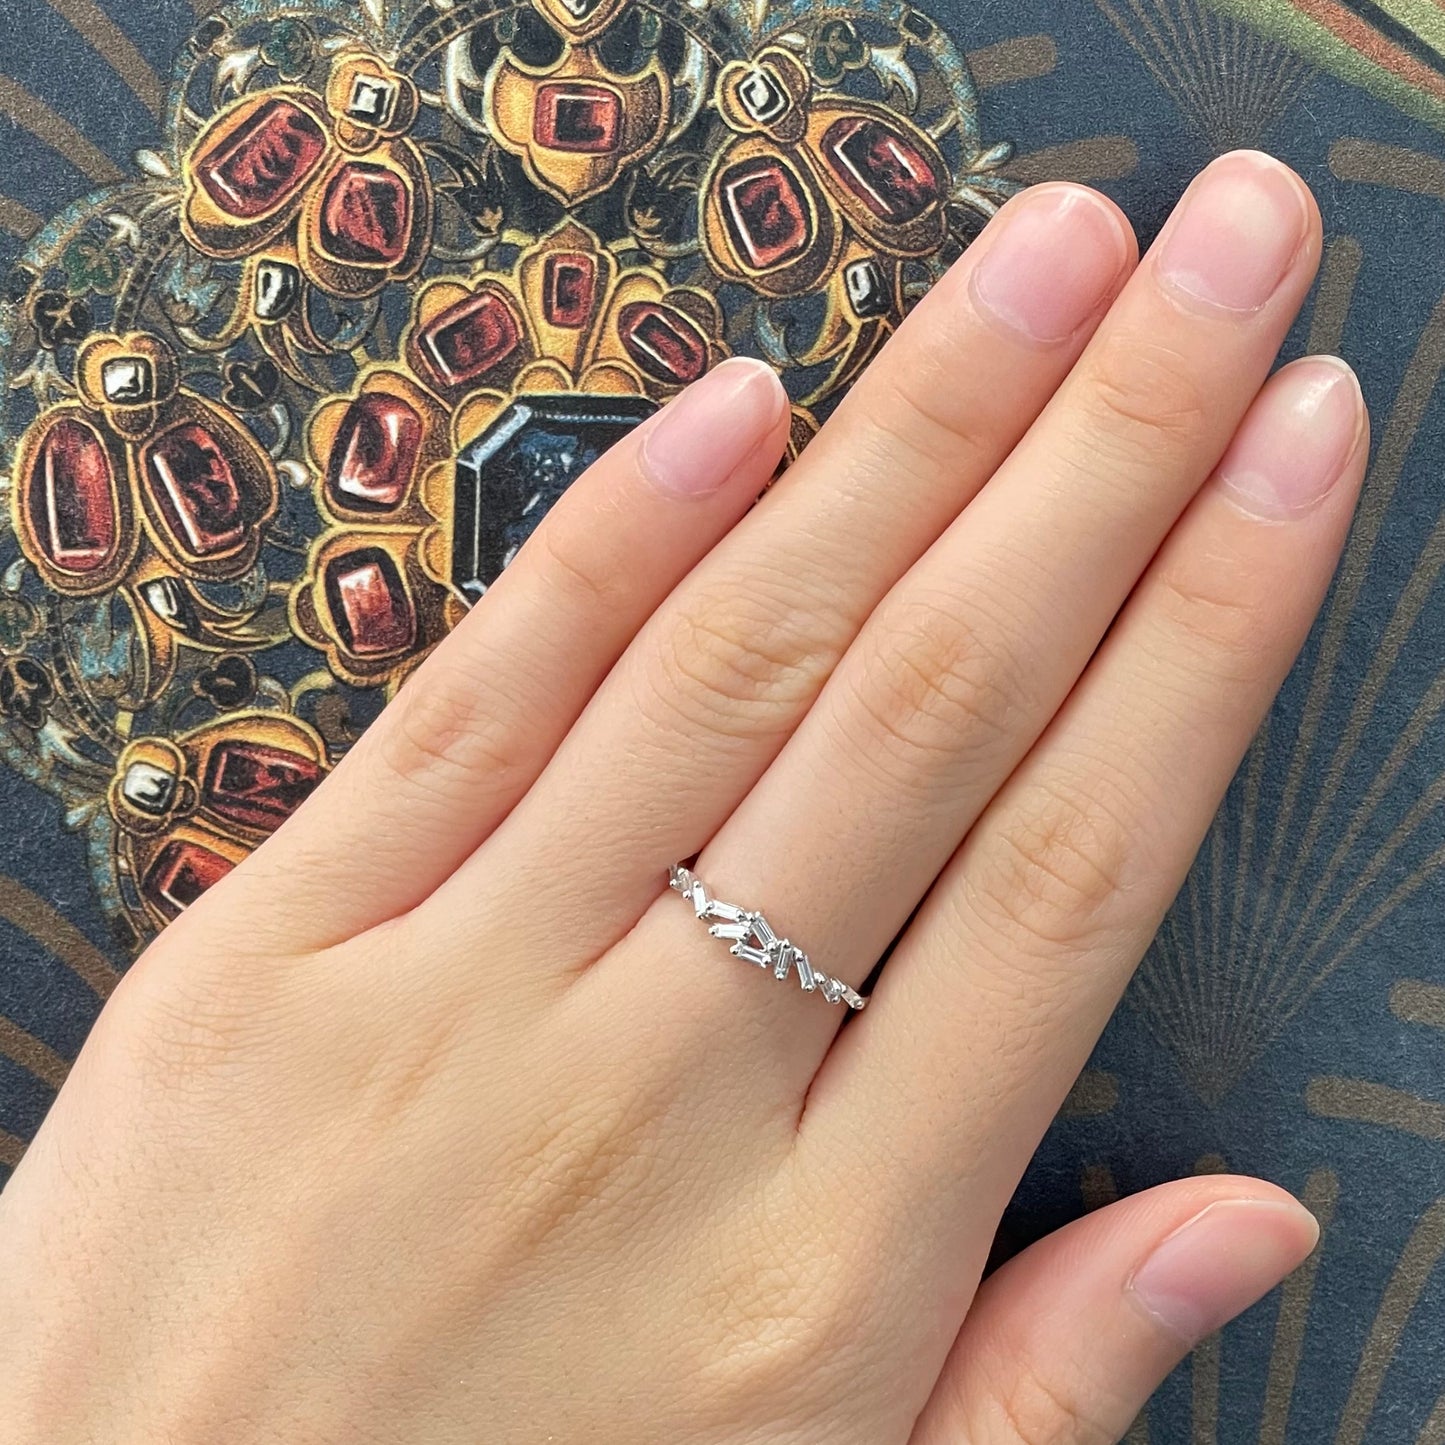 18k白金鑽石排戒在中指上 18k White Gold Baguette Diamond Ring on middle finger